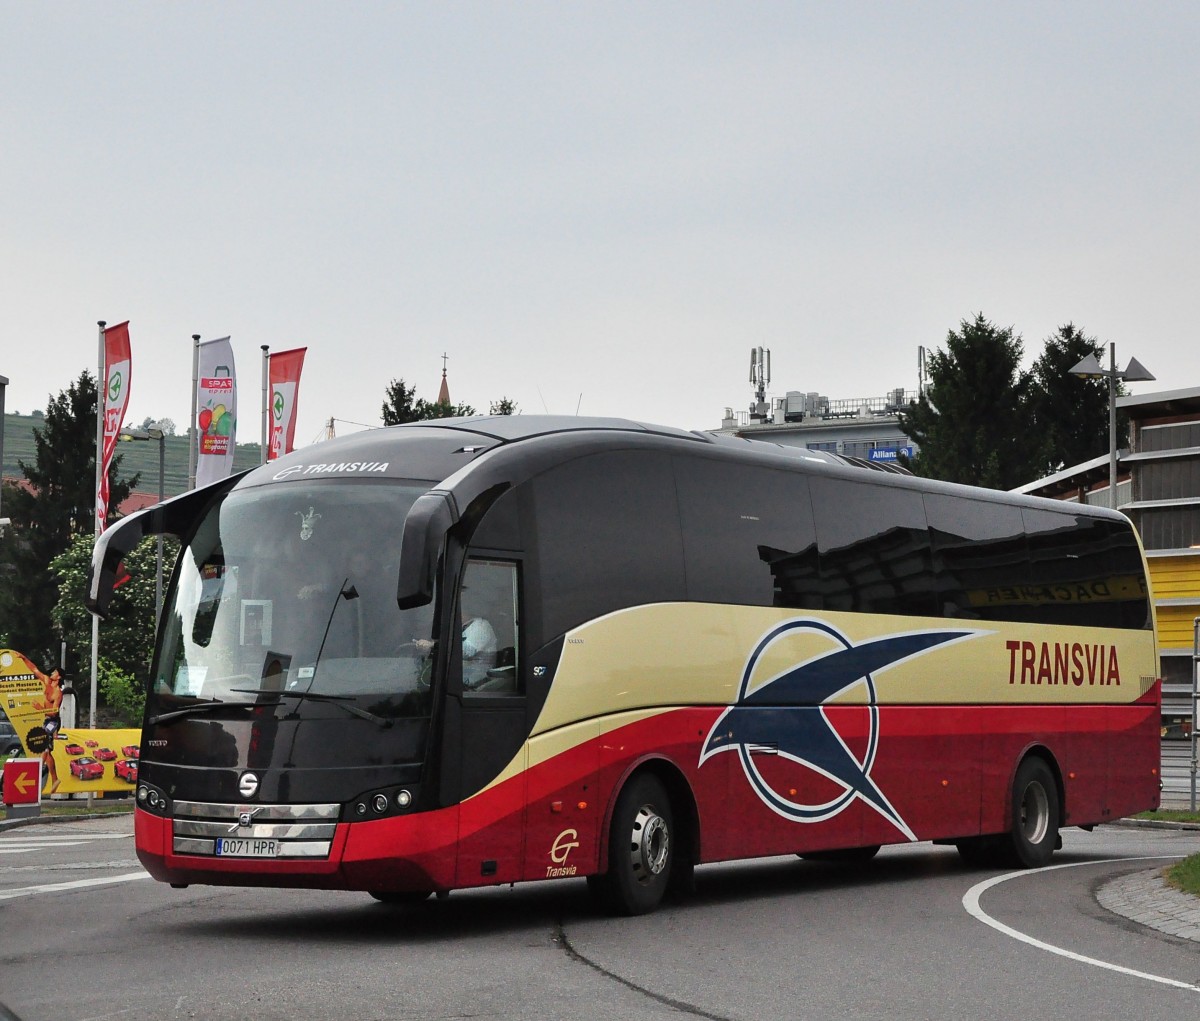 VOLVO Sunsundegui von Transvia aus Spanien im Mai 2015 in Krems unterwegs..